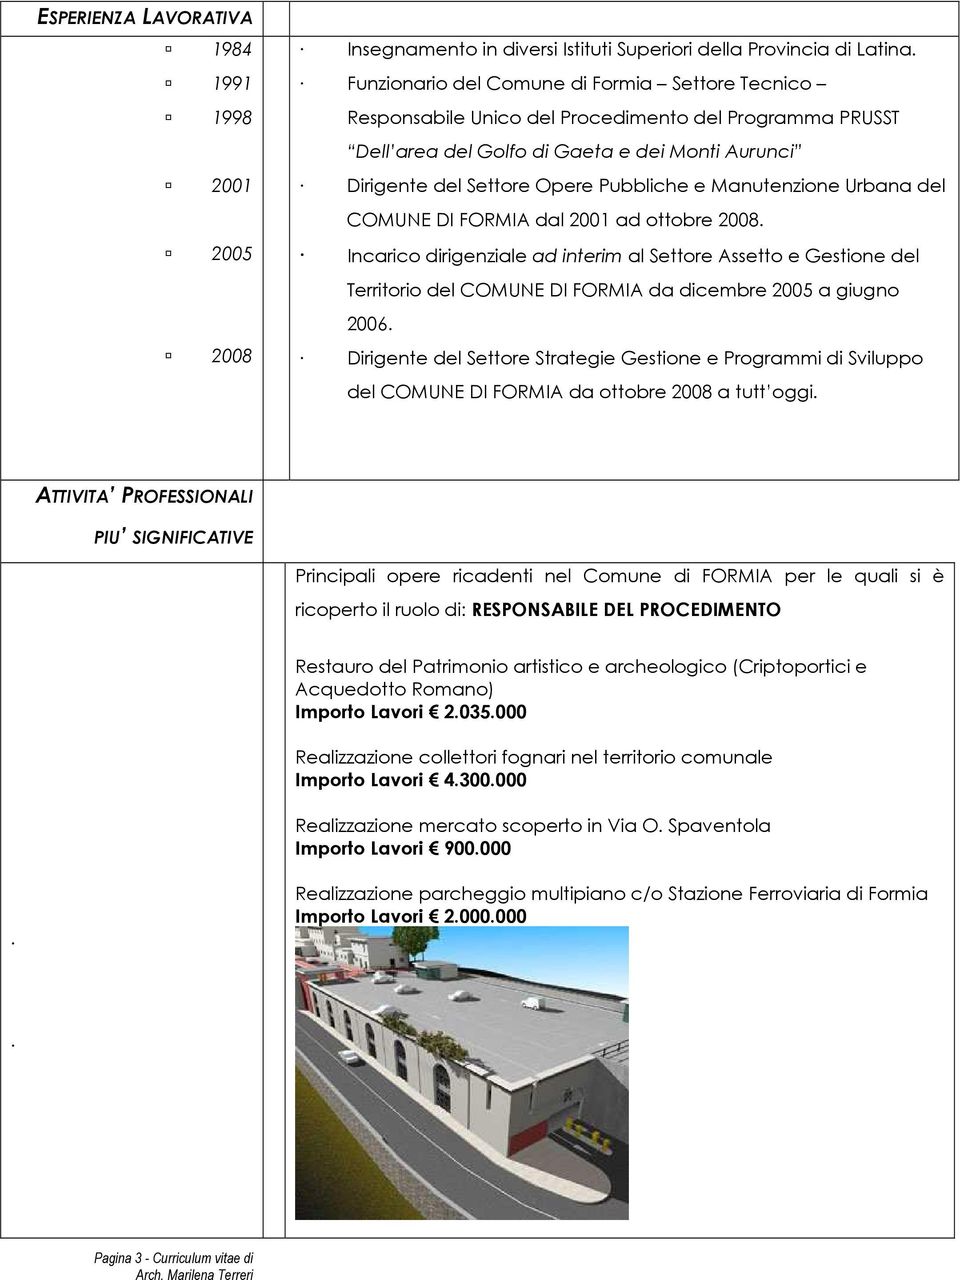 Manutenzione Urbana del COMUNE DI FORMIA dal 2001 ad ottobre 2008. Incarico dirigenziale ad interim al Settore Assetto e Gestione del Territorio del COMUNE DI FORMIA da dicembre 2005 a giugno 2006.